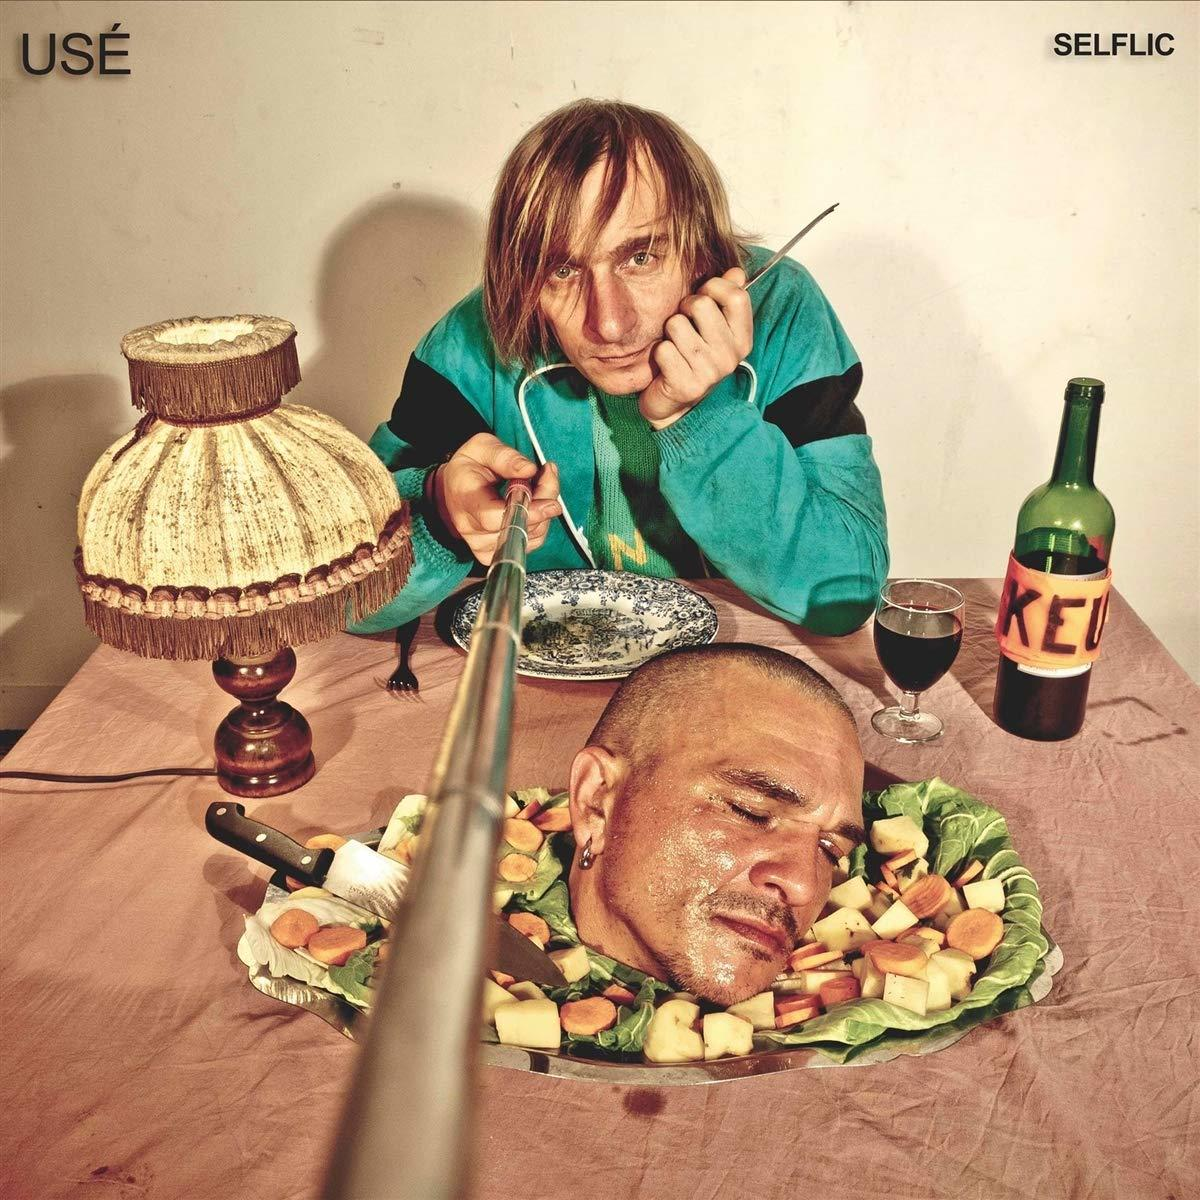 U.S.E. - selflic (CD) 